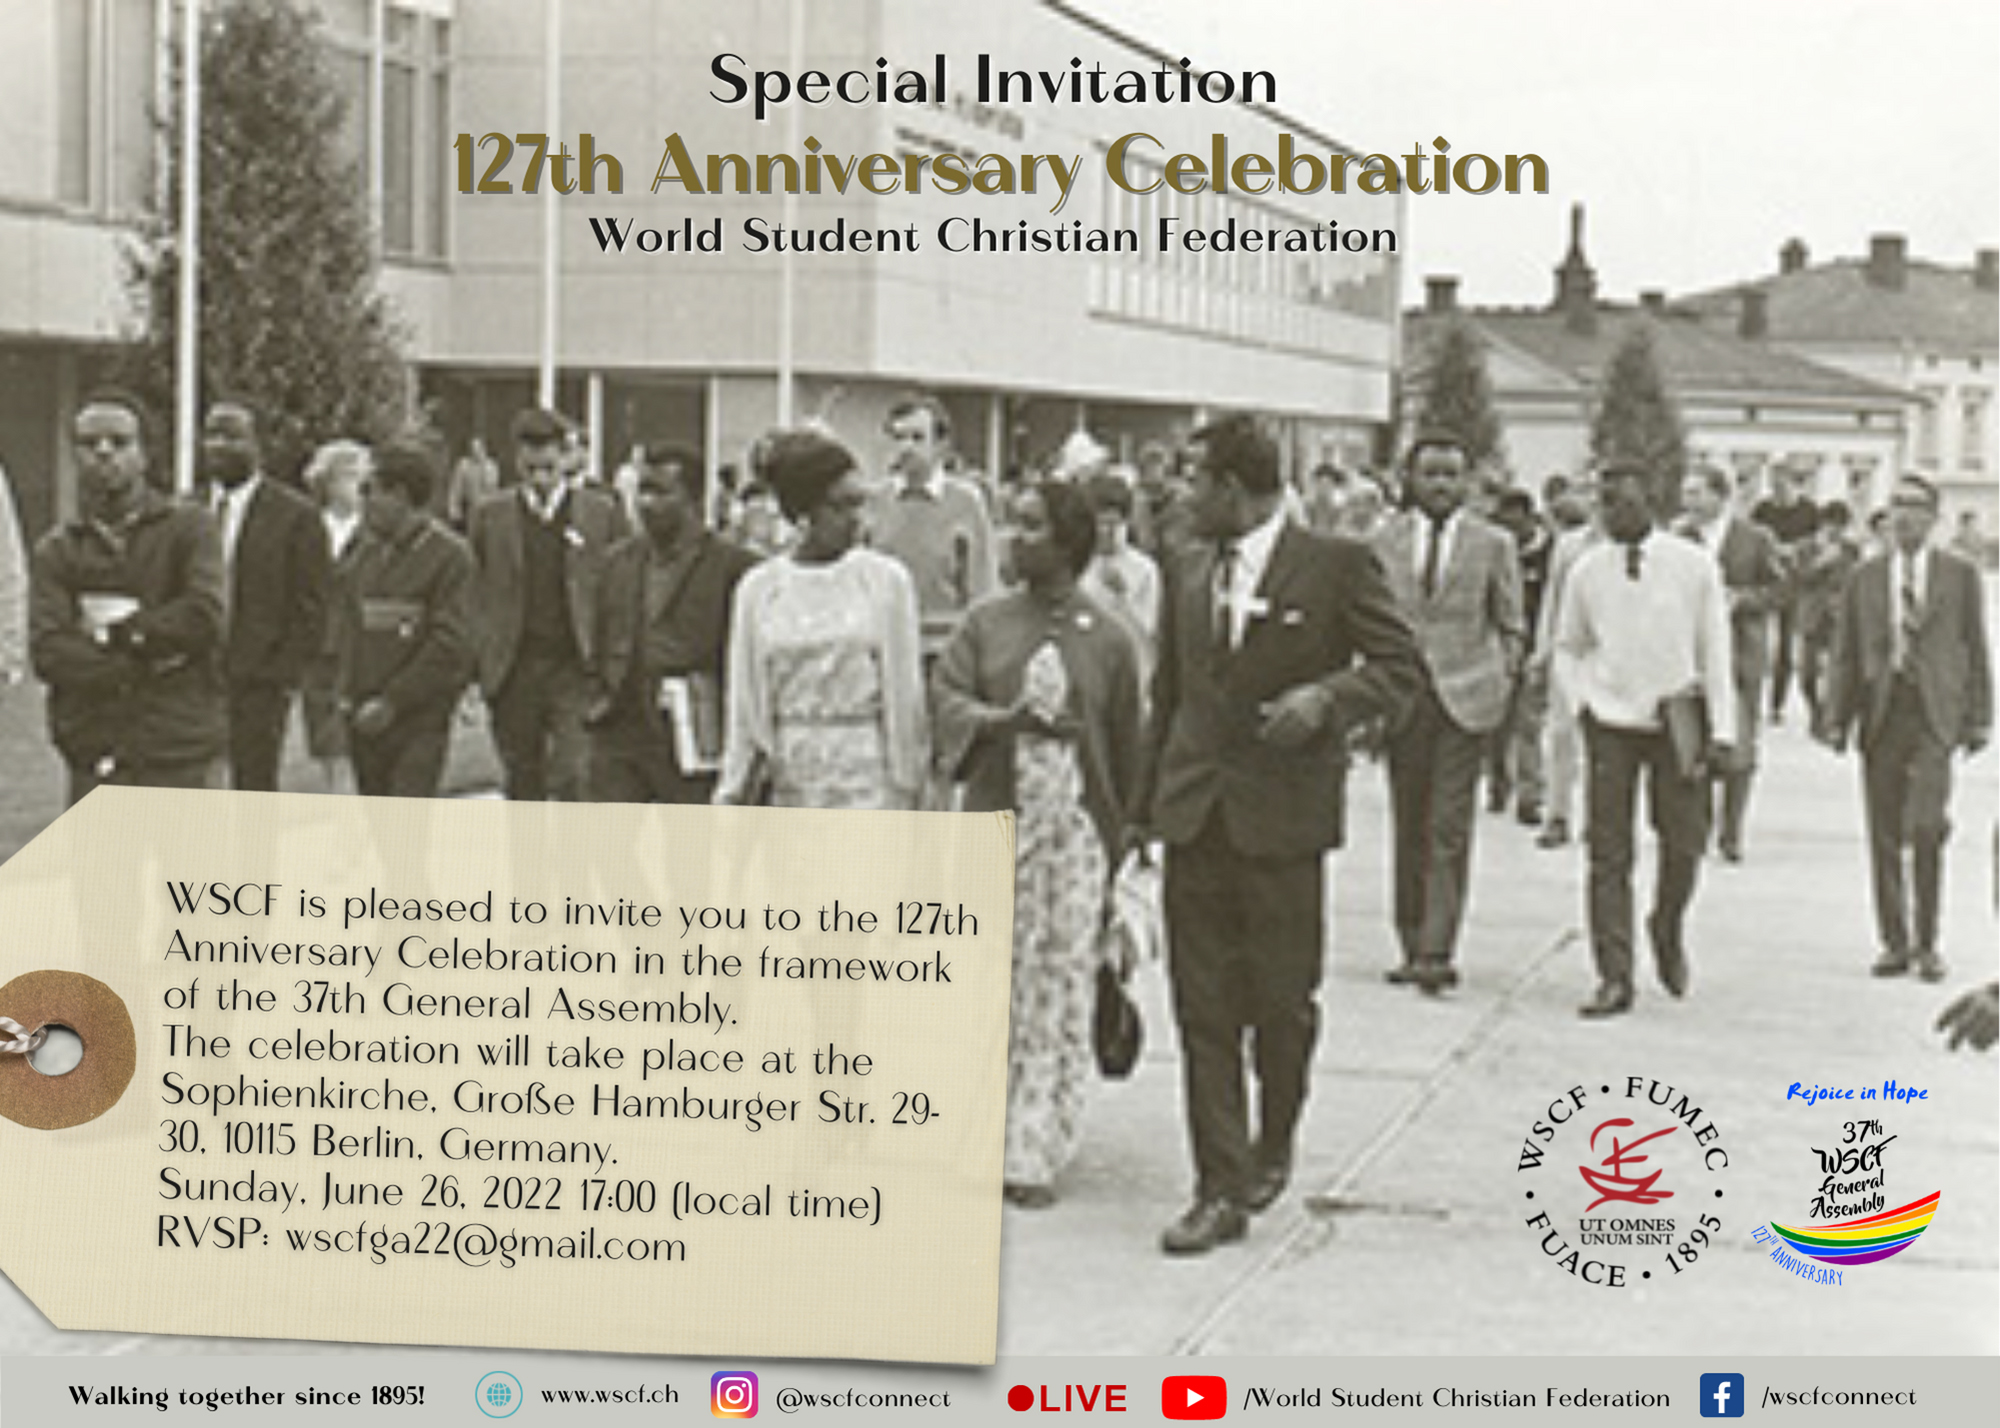 WSCF 127th Anniversary invitation